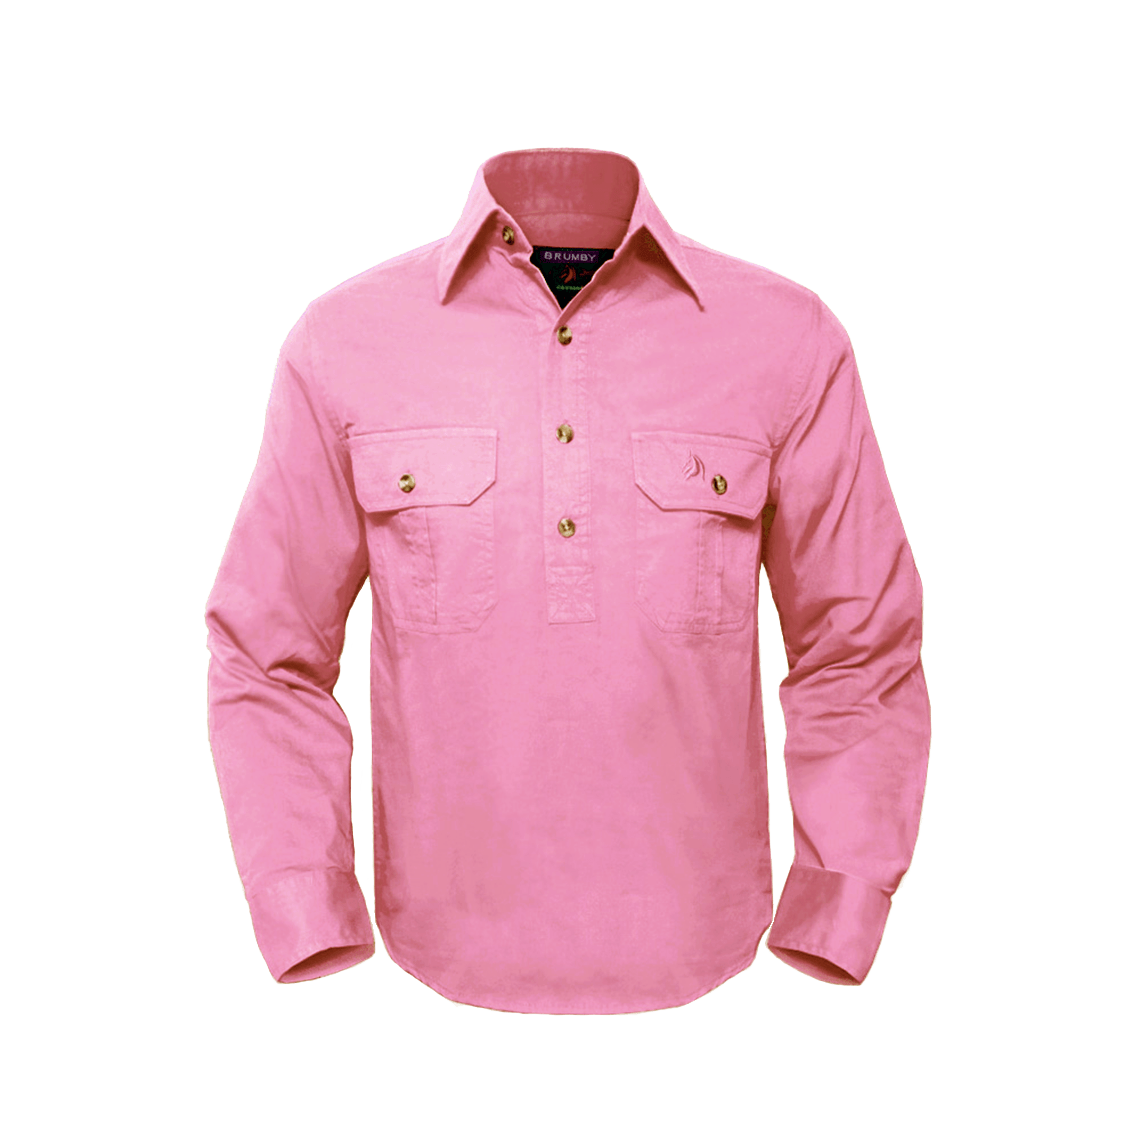 Unisex Half Button Workshirt - Pink